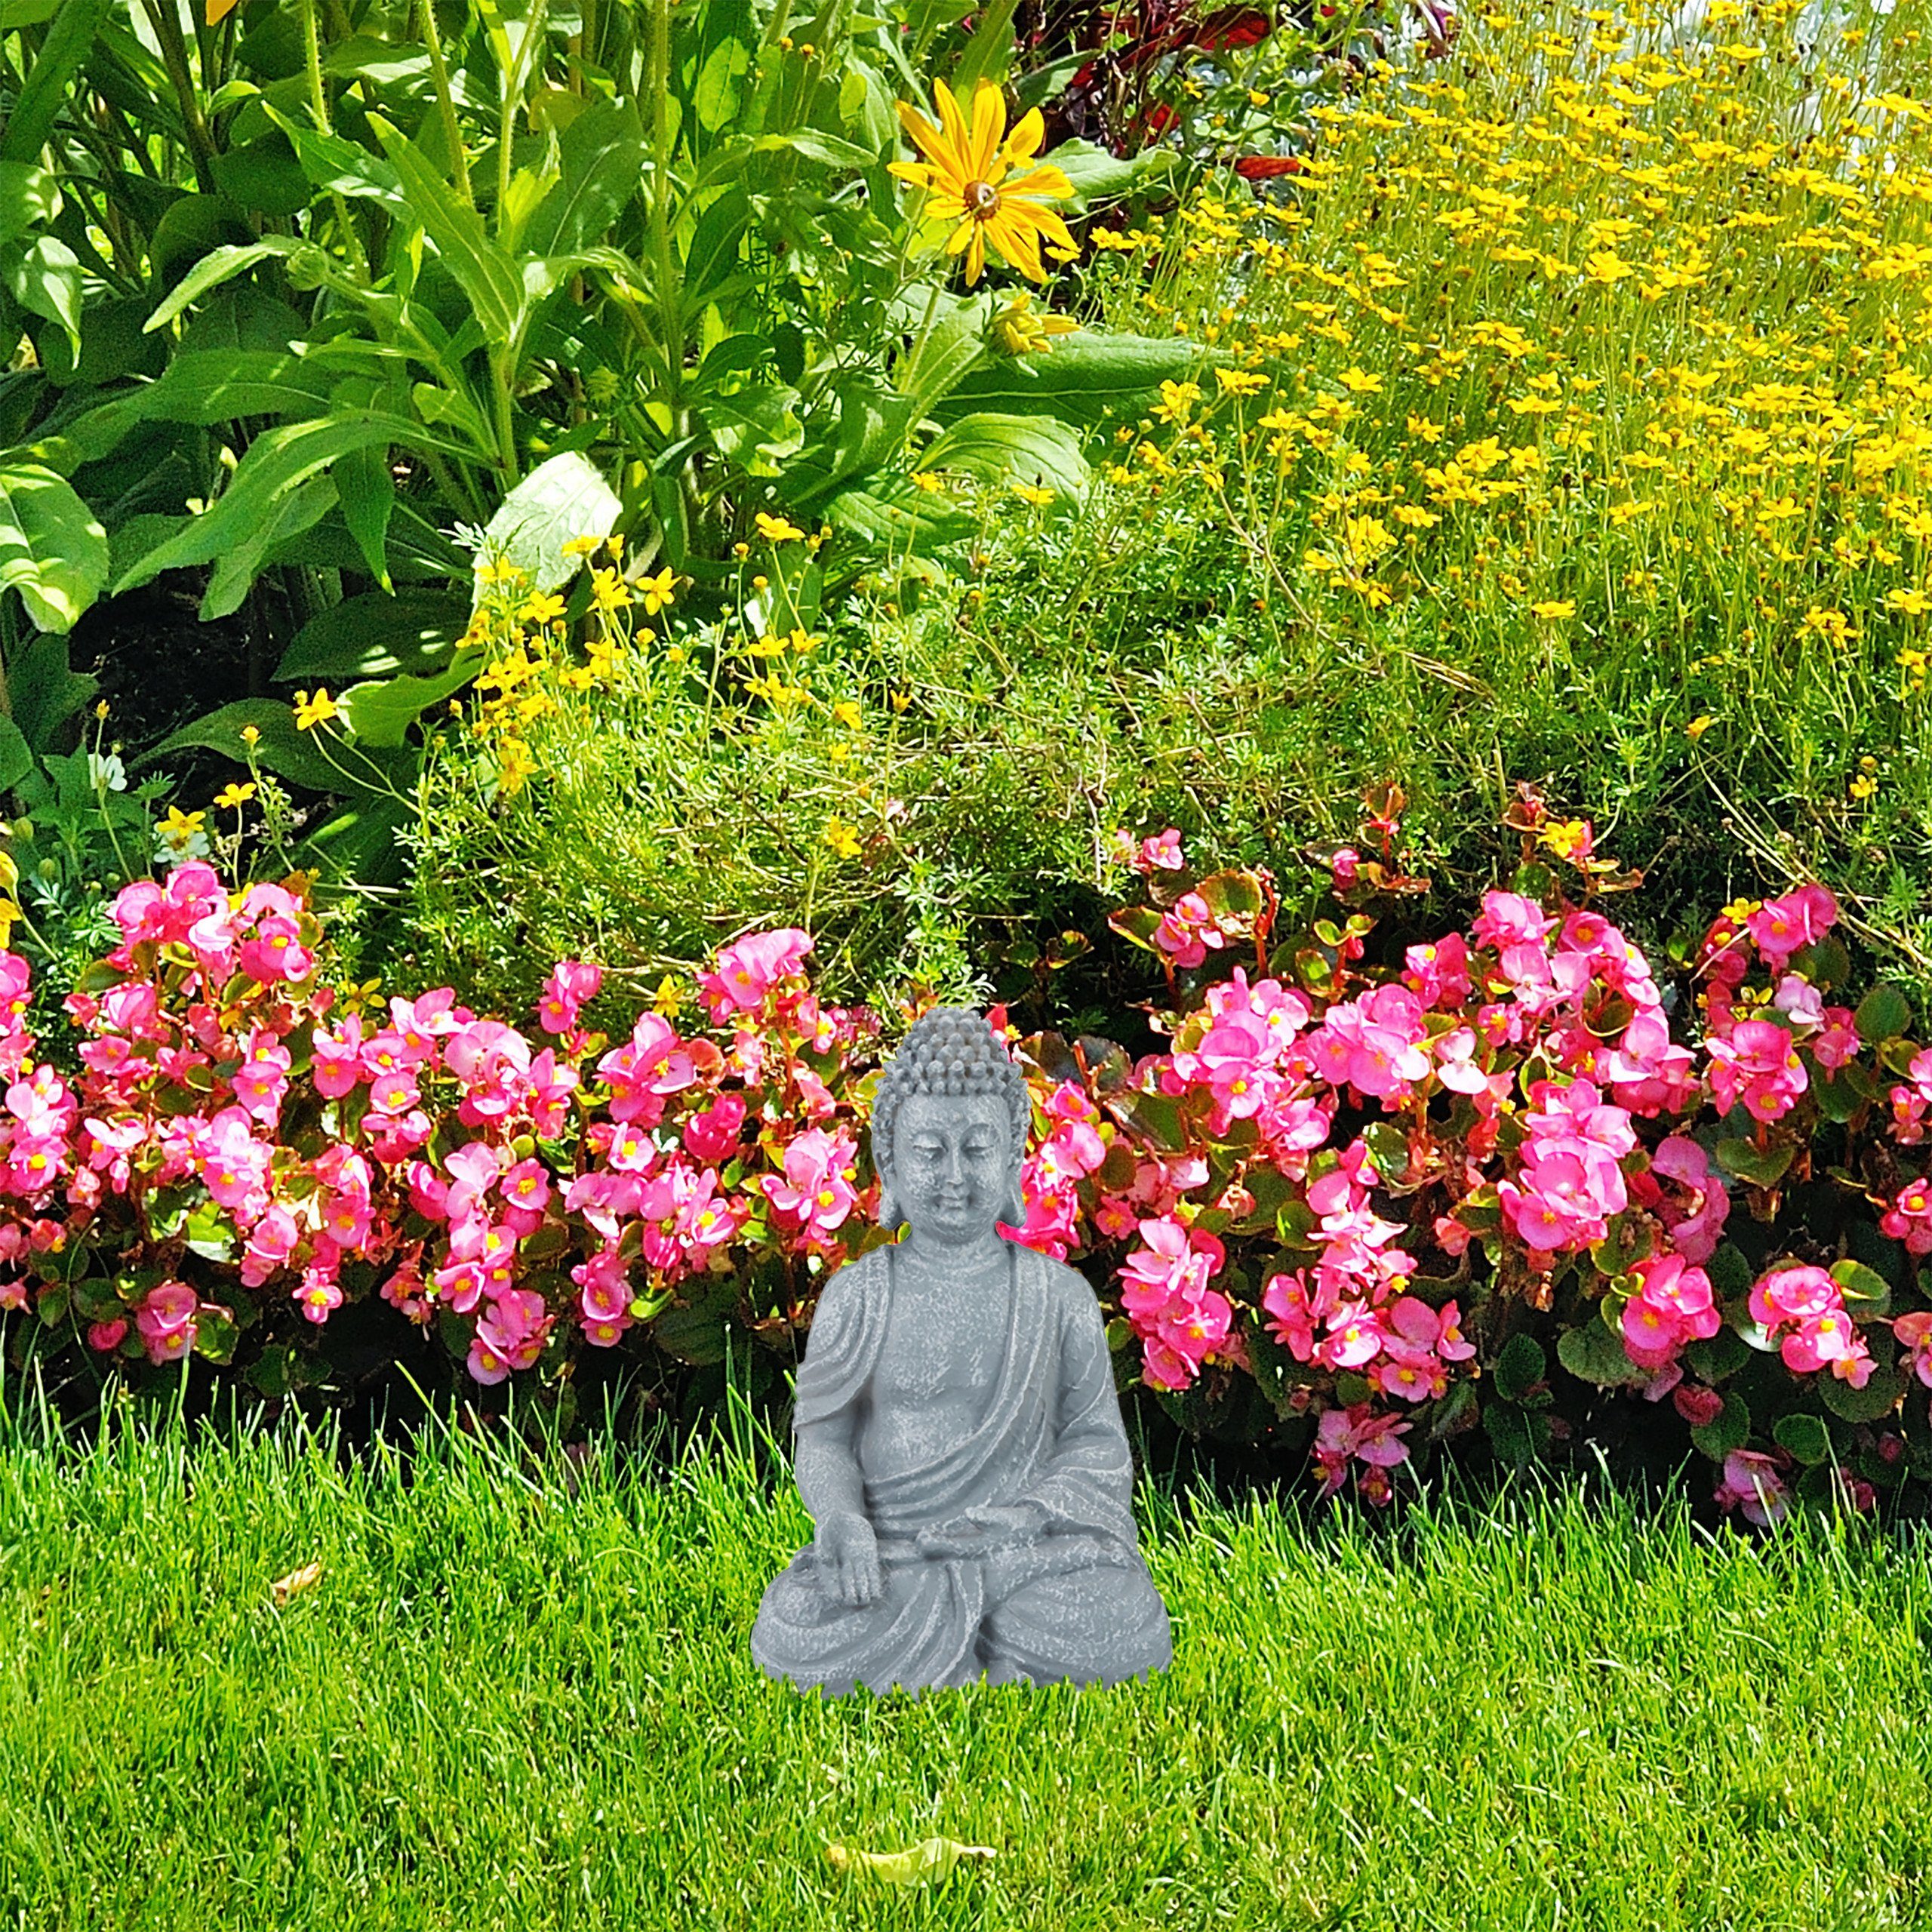 cm, hellgrau Figur 30 Buddhafigur sitzend Buddha relaxdays